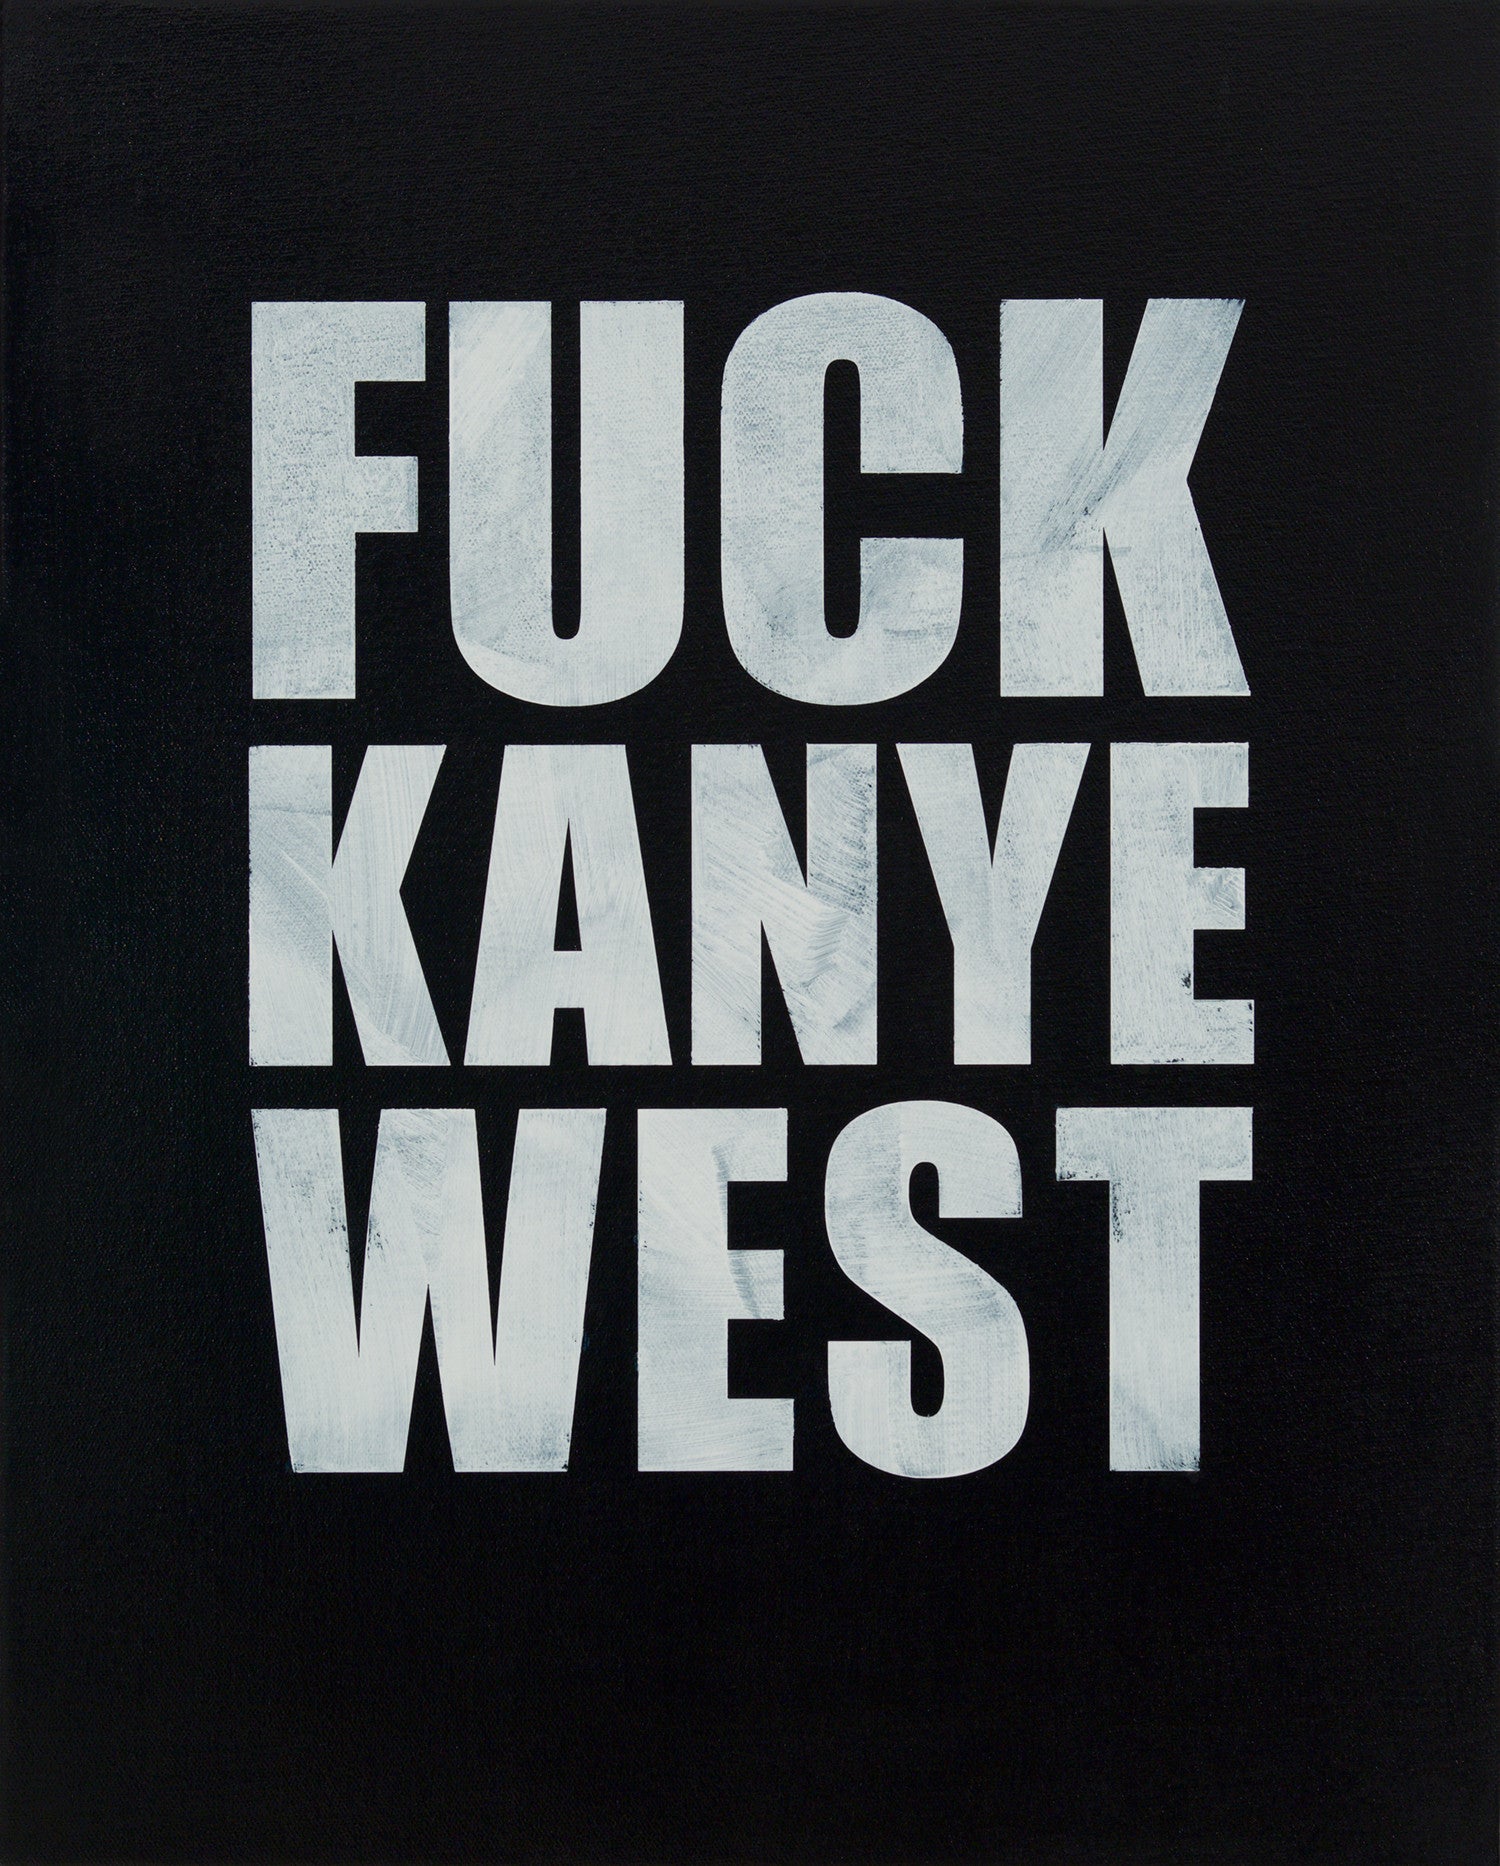 Chris Bors, "Fuck Kanye West"